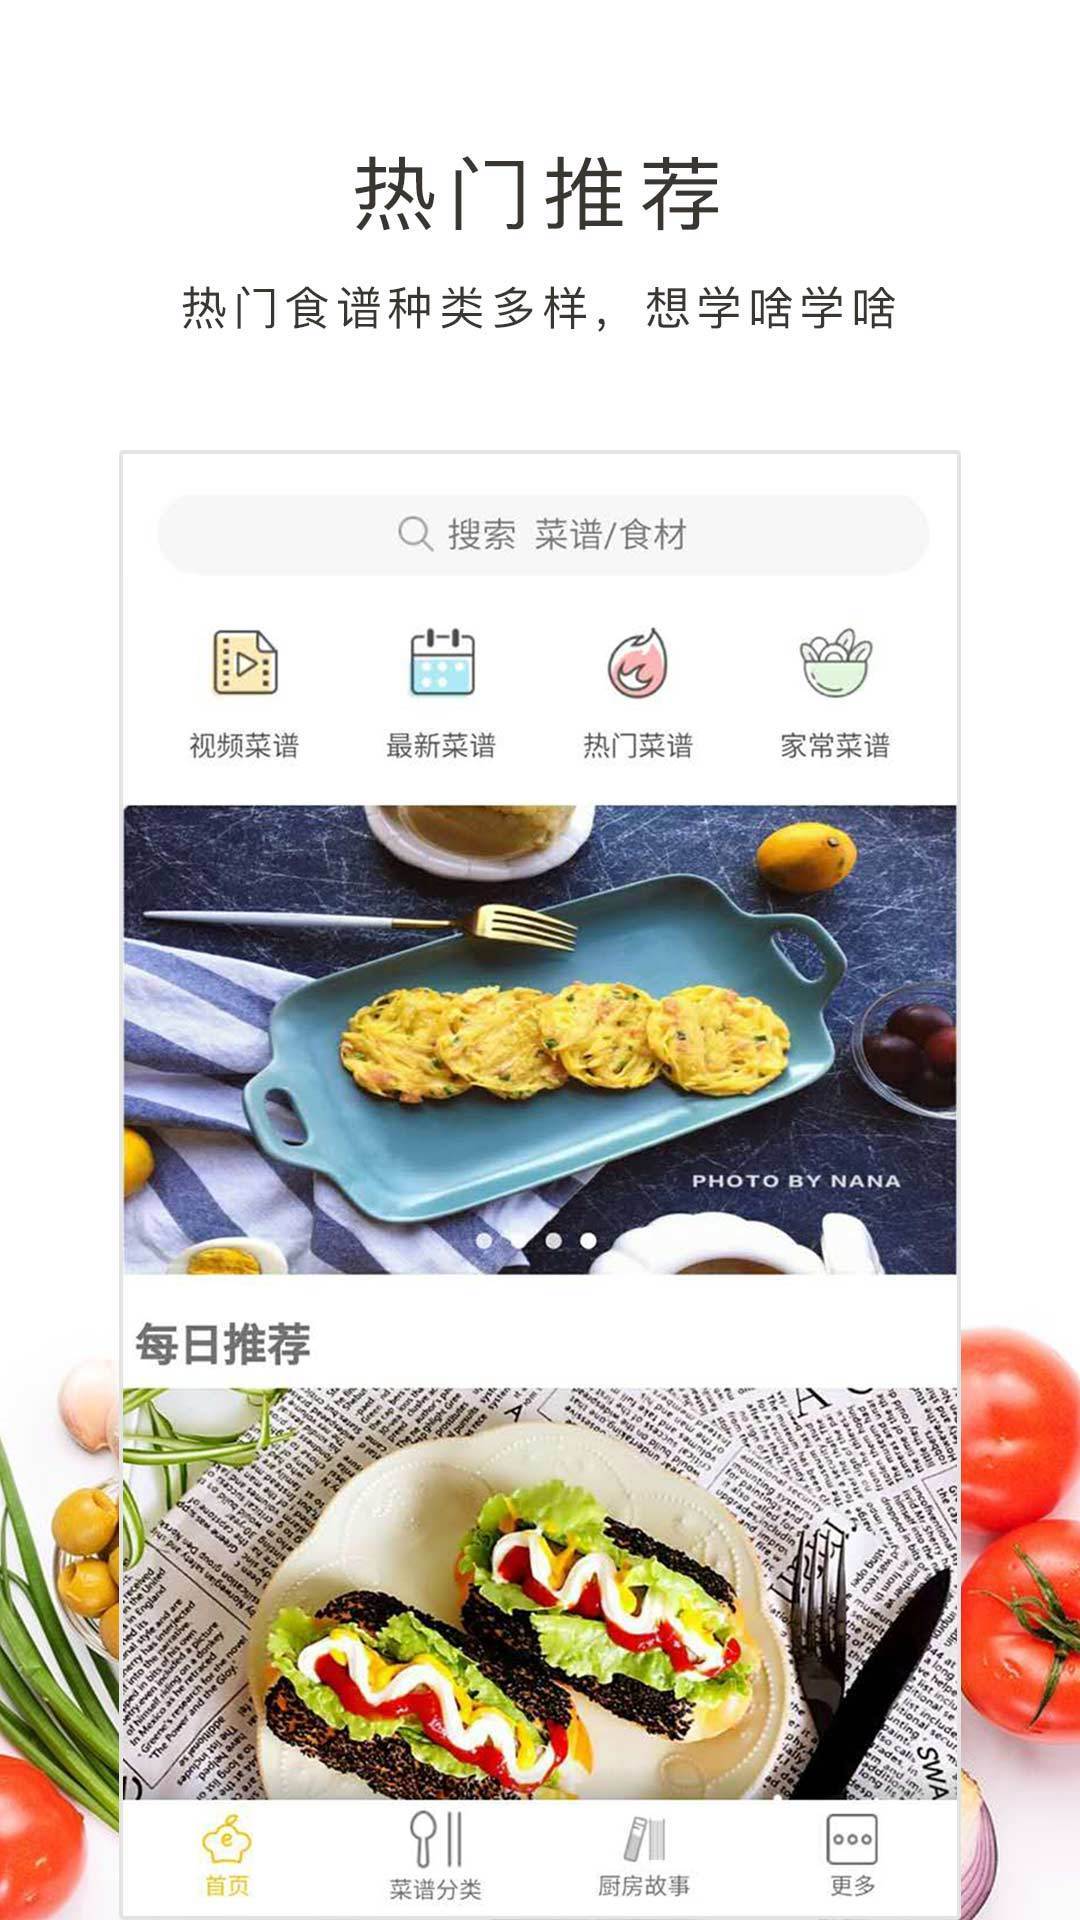 好豆菜谱app